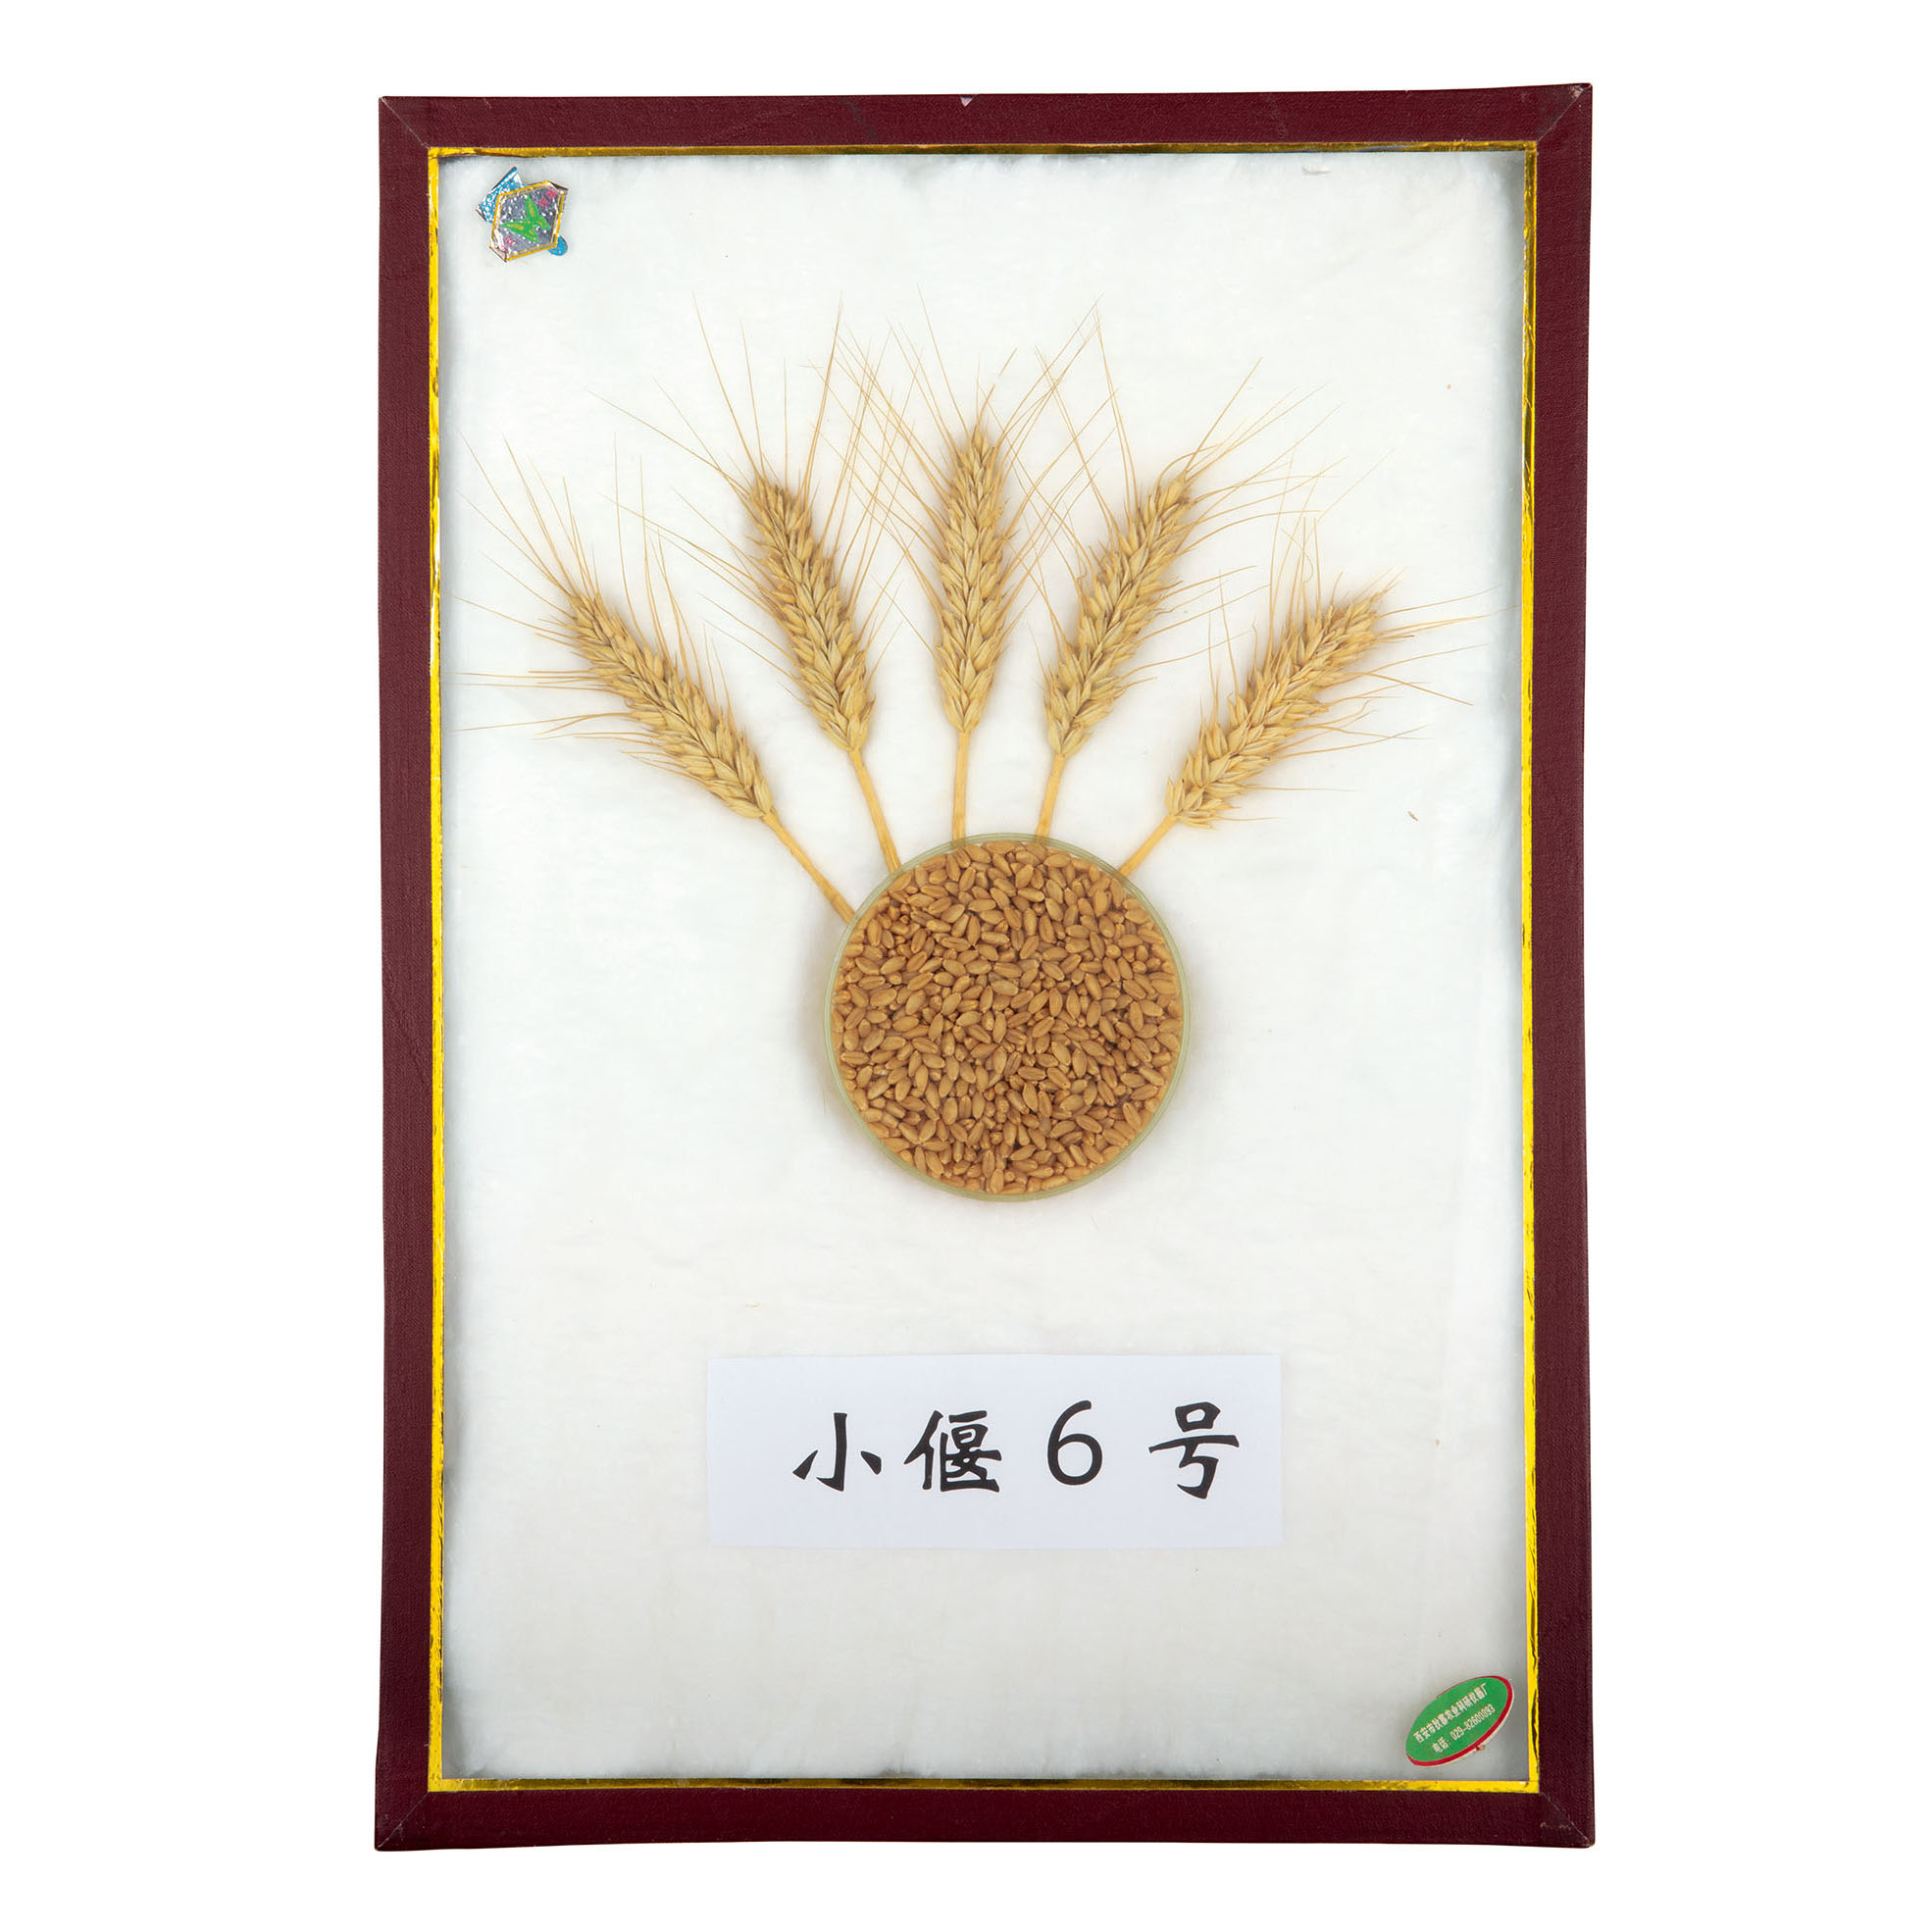 小麦远源杂交品种“小偃6号”标本